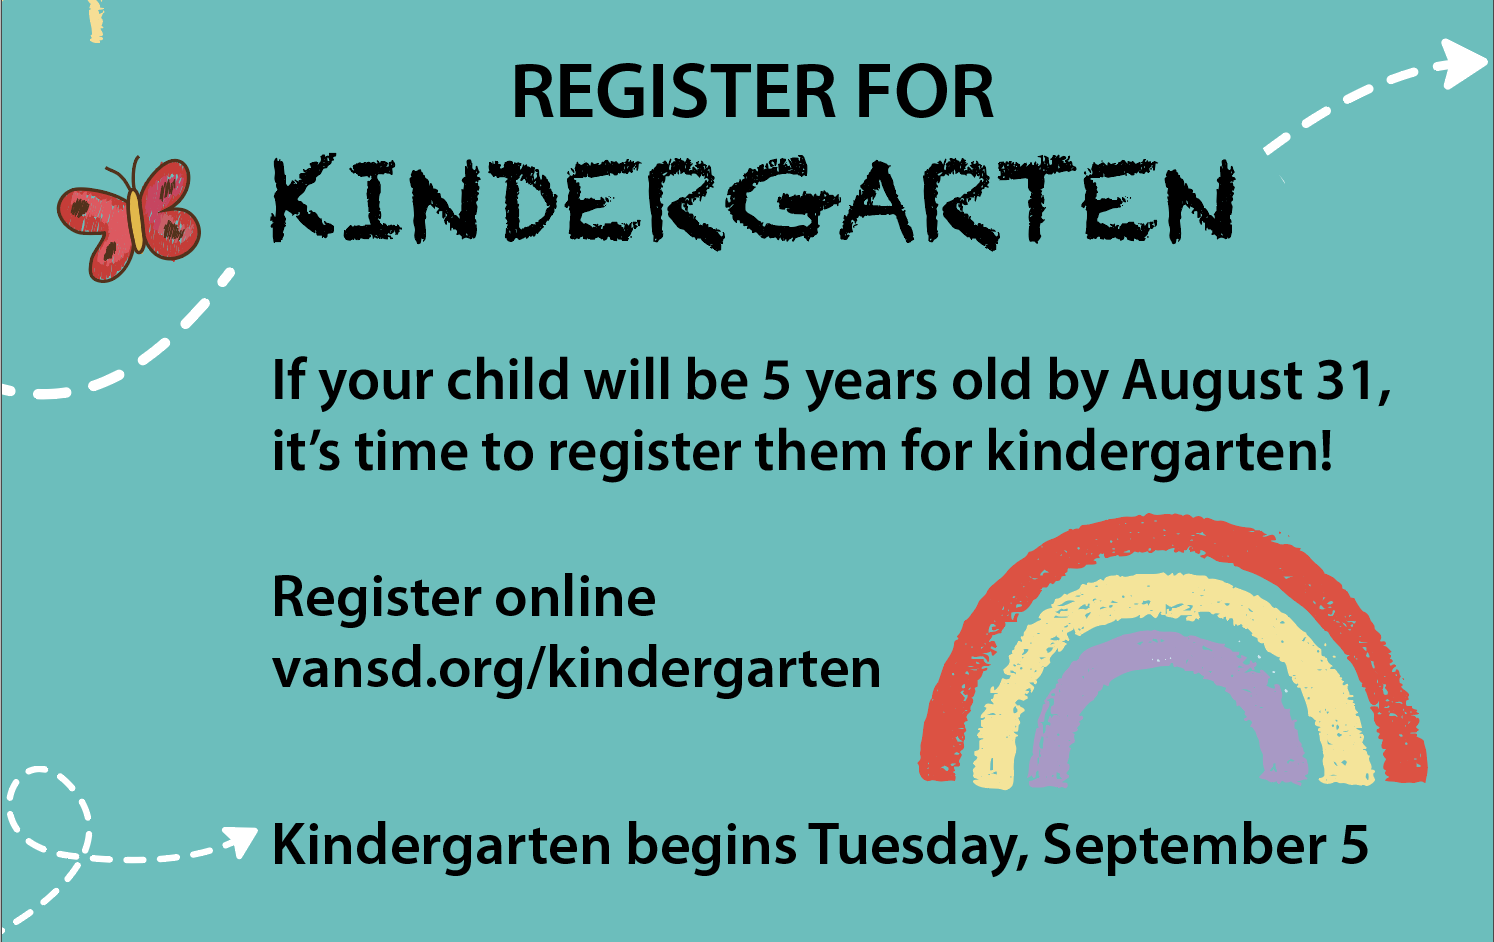 Register for kindergarten!